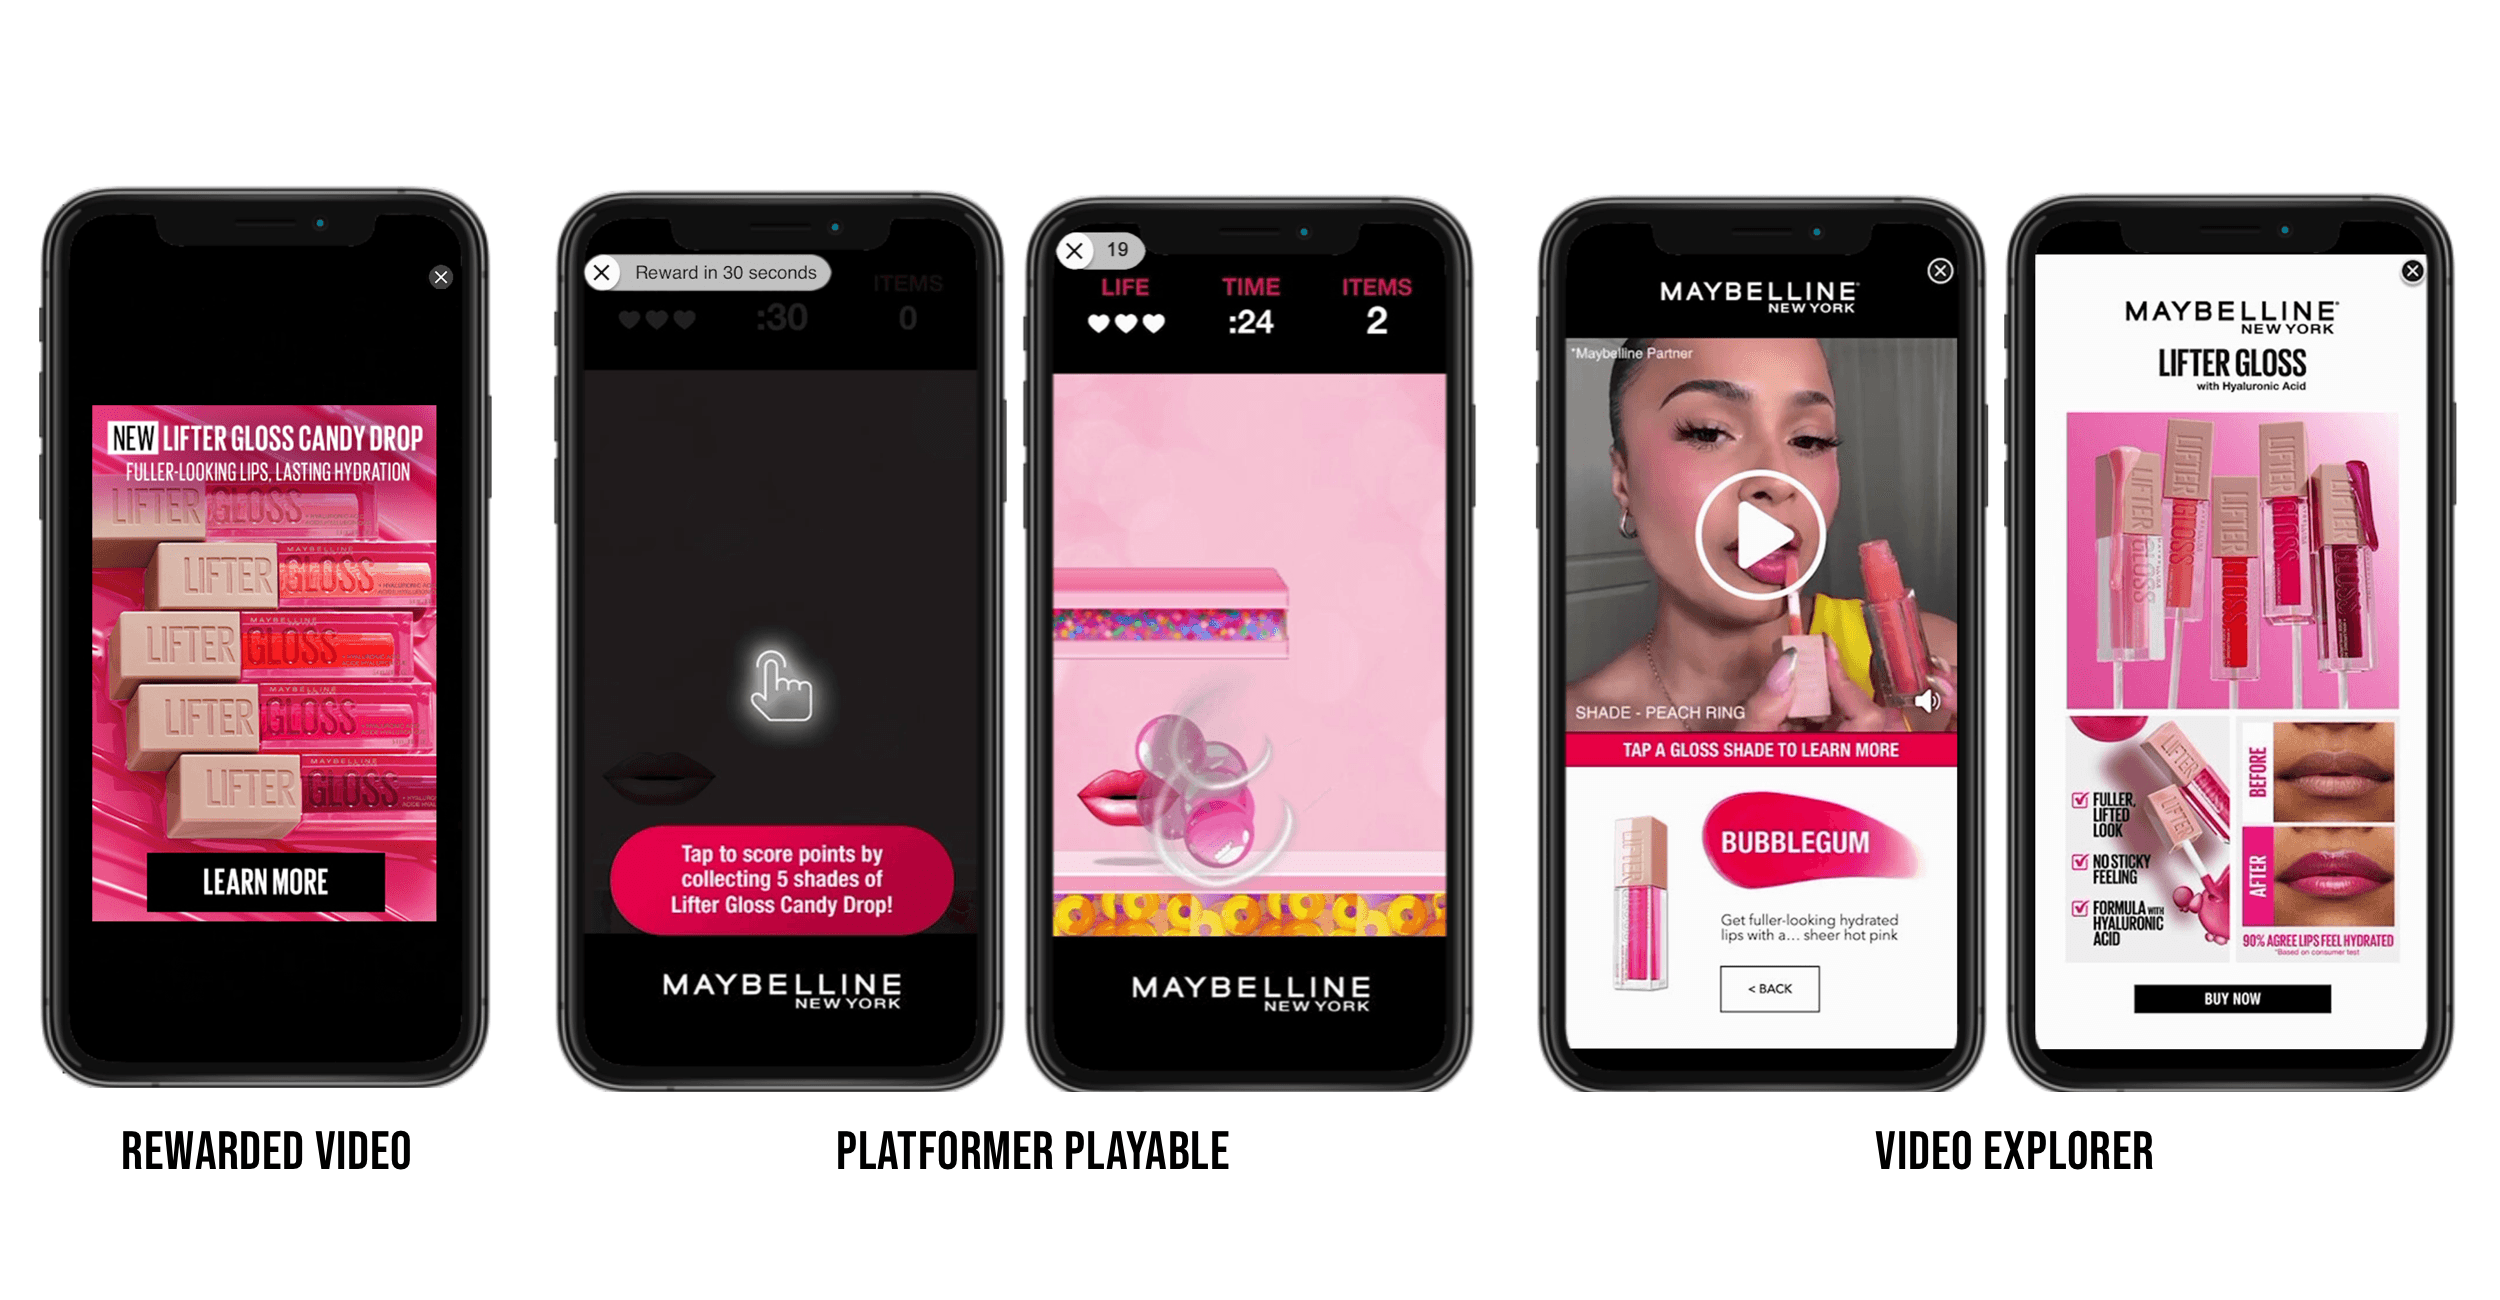 Exemples de campagnes de Lifter Gloss Candy Drop